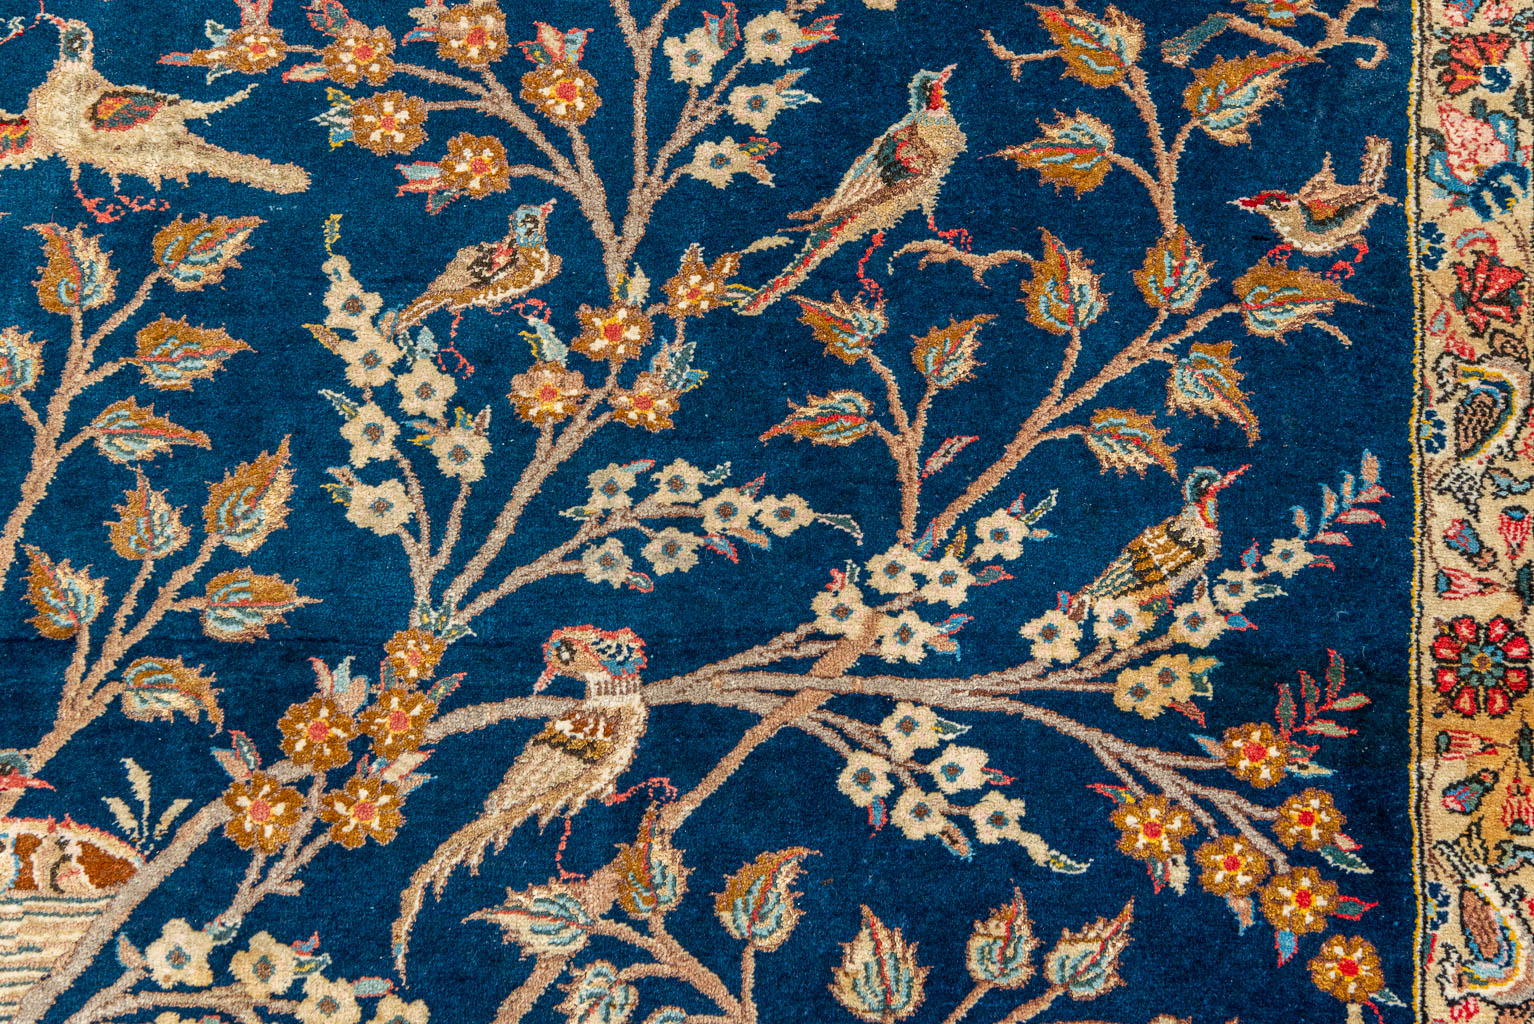 An antique hand-made carpet 